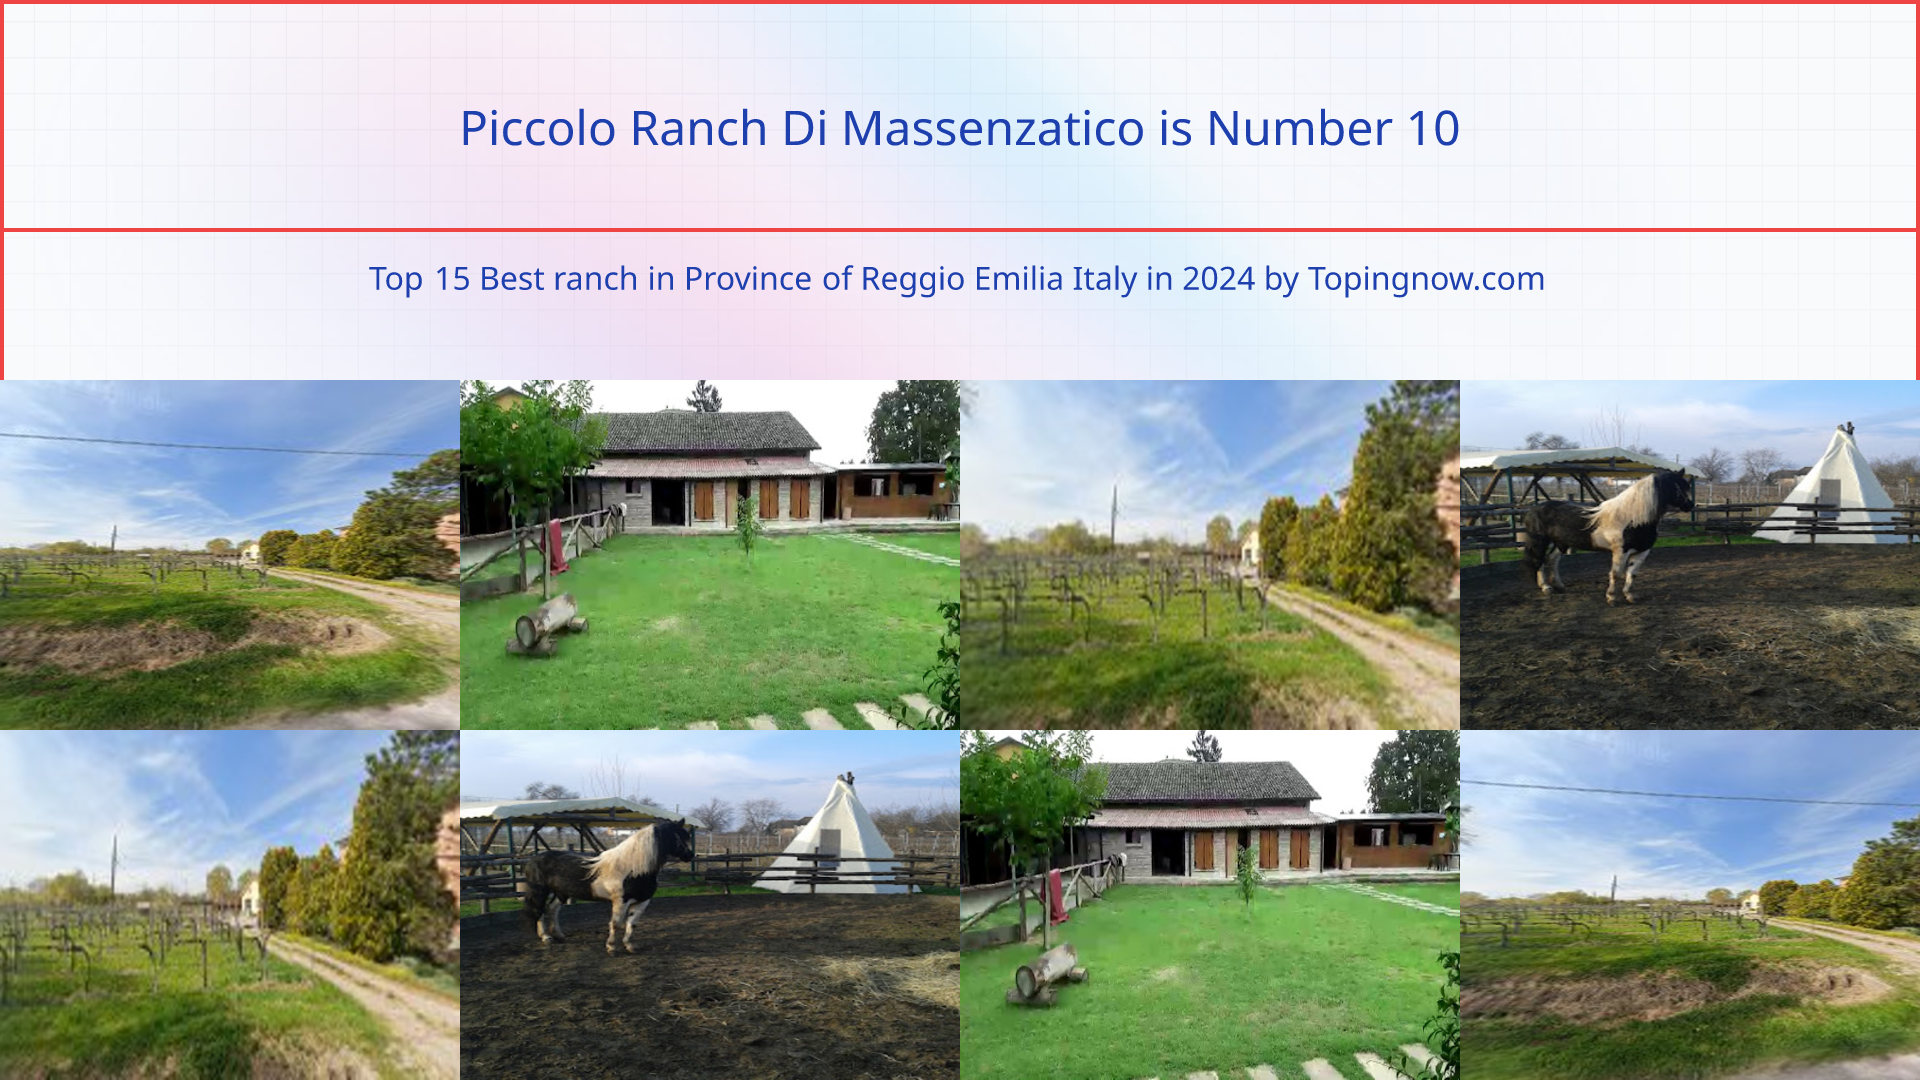 Piccolo Ranch Di Massenzatico: Top 15 Best ranch in Province of Reggio Emilia Italy in 2024